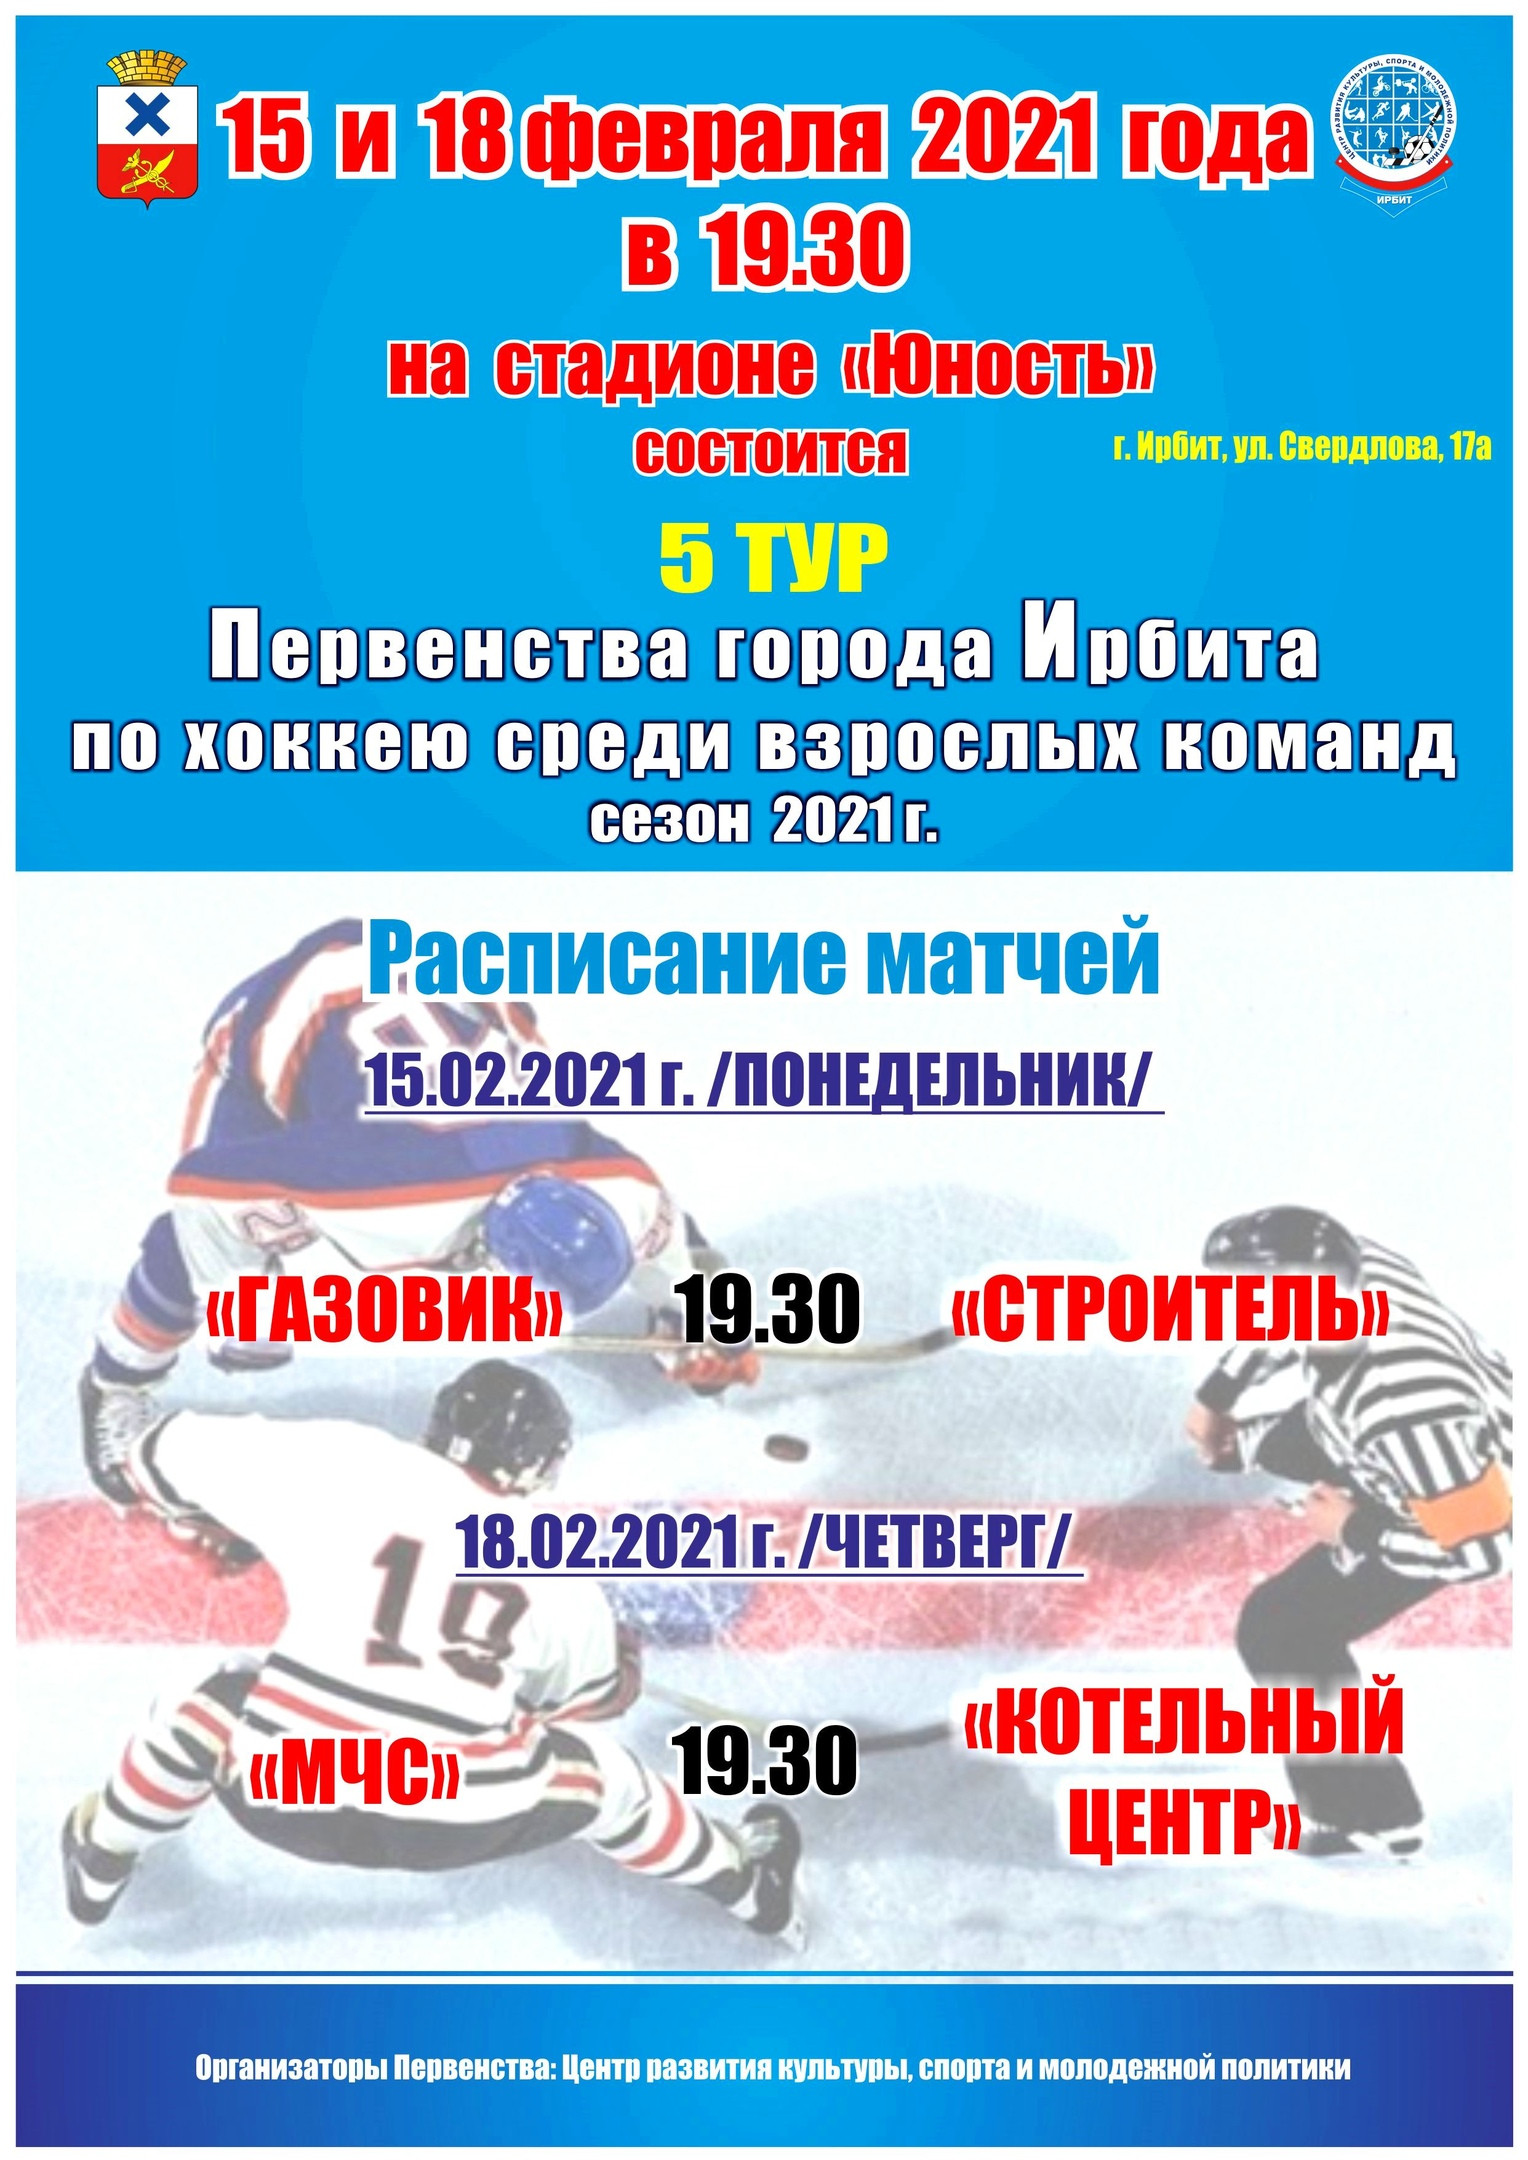 5 тур Первенства города Ирбита по хоккею среди взрослых команд, сезон 2021 г.